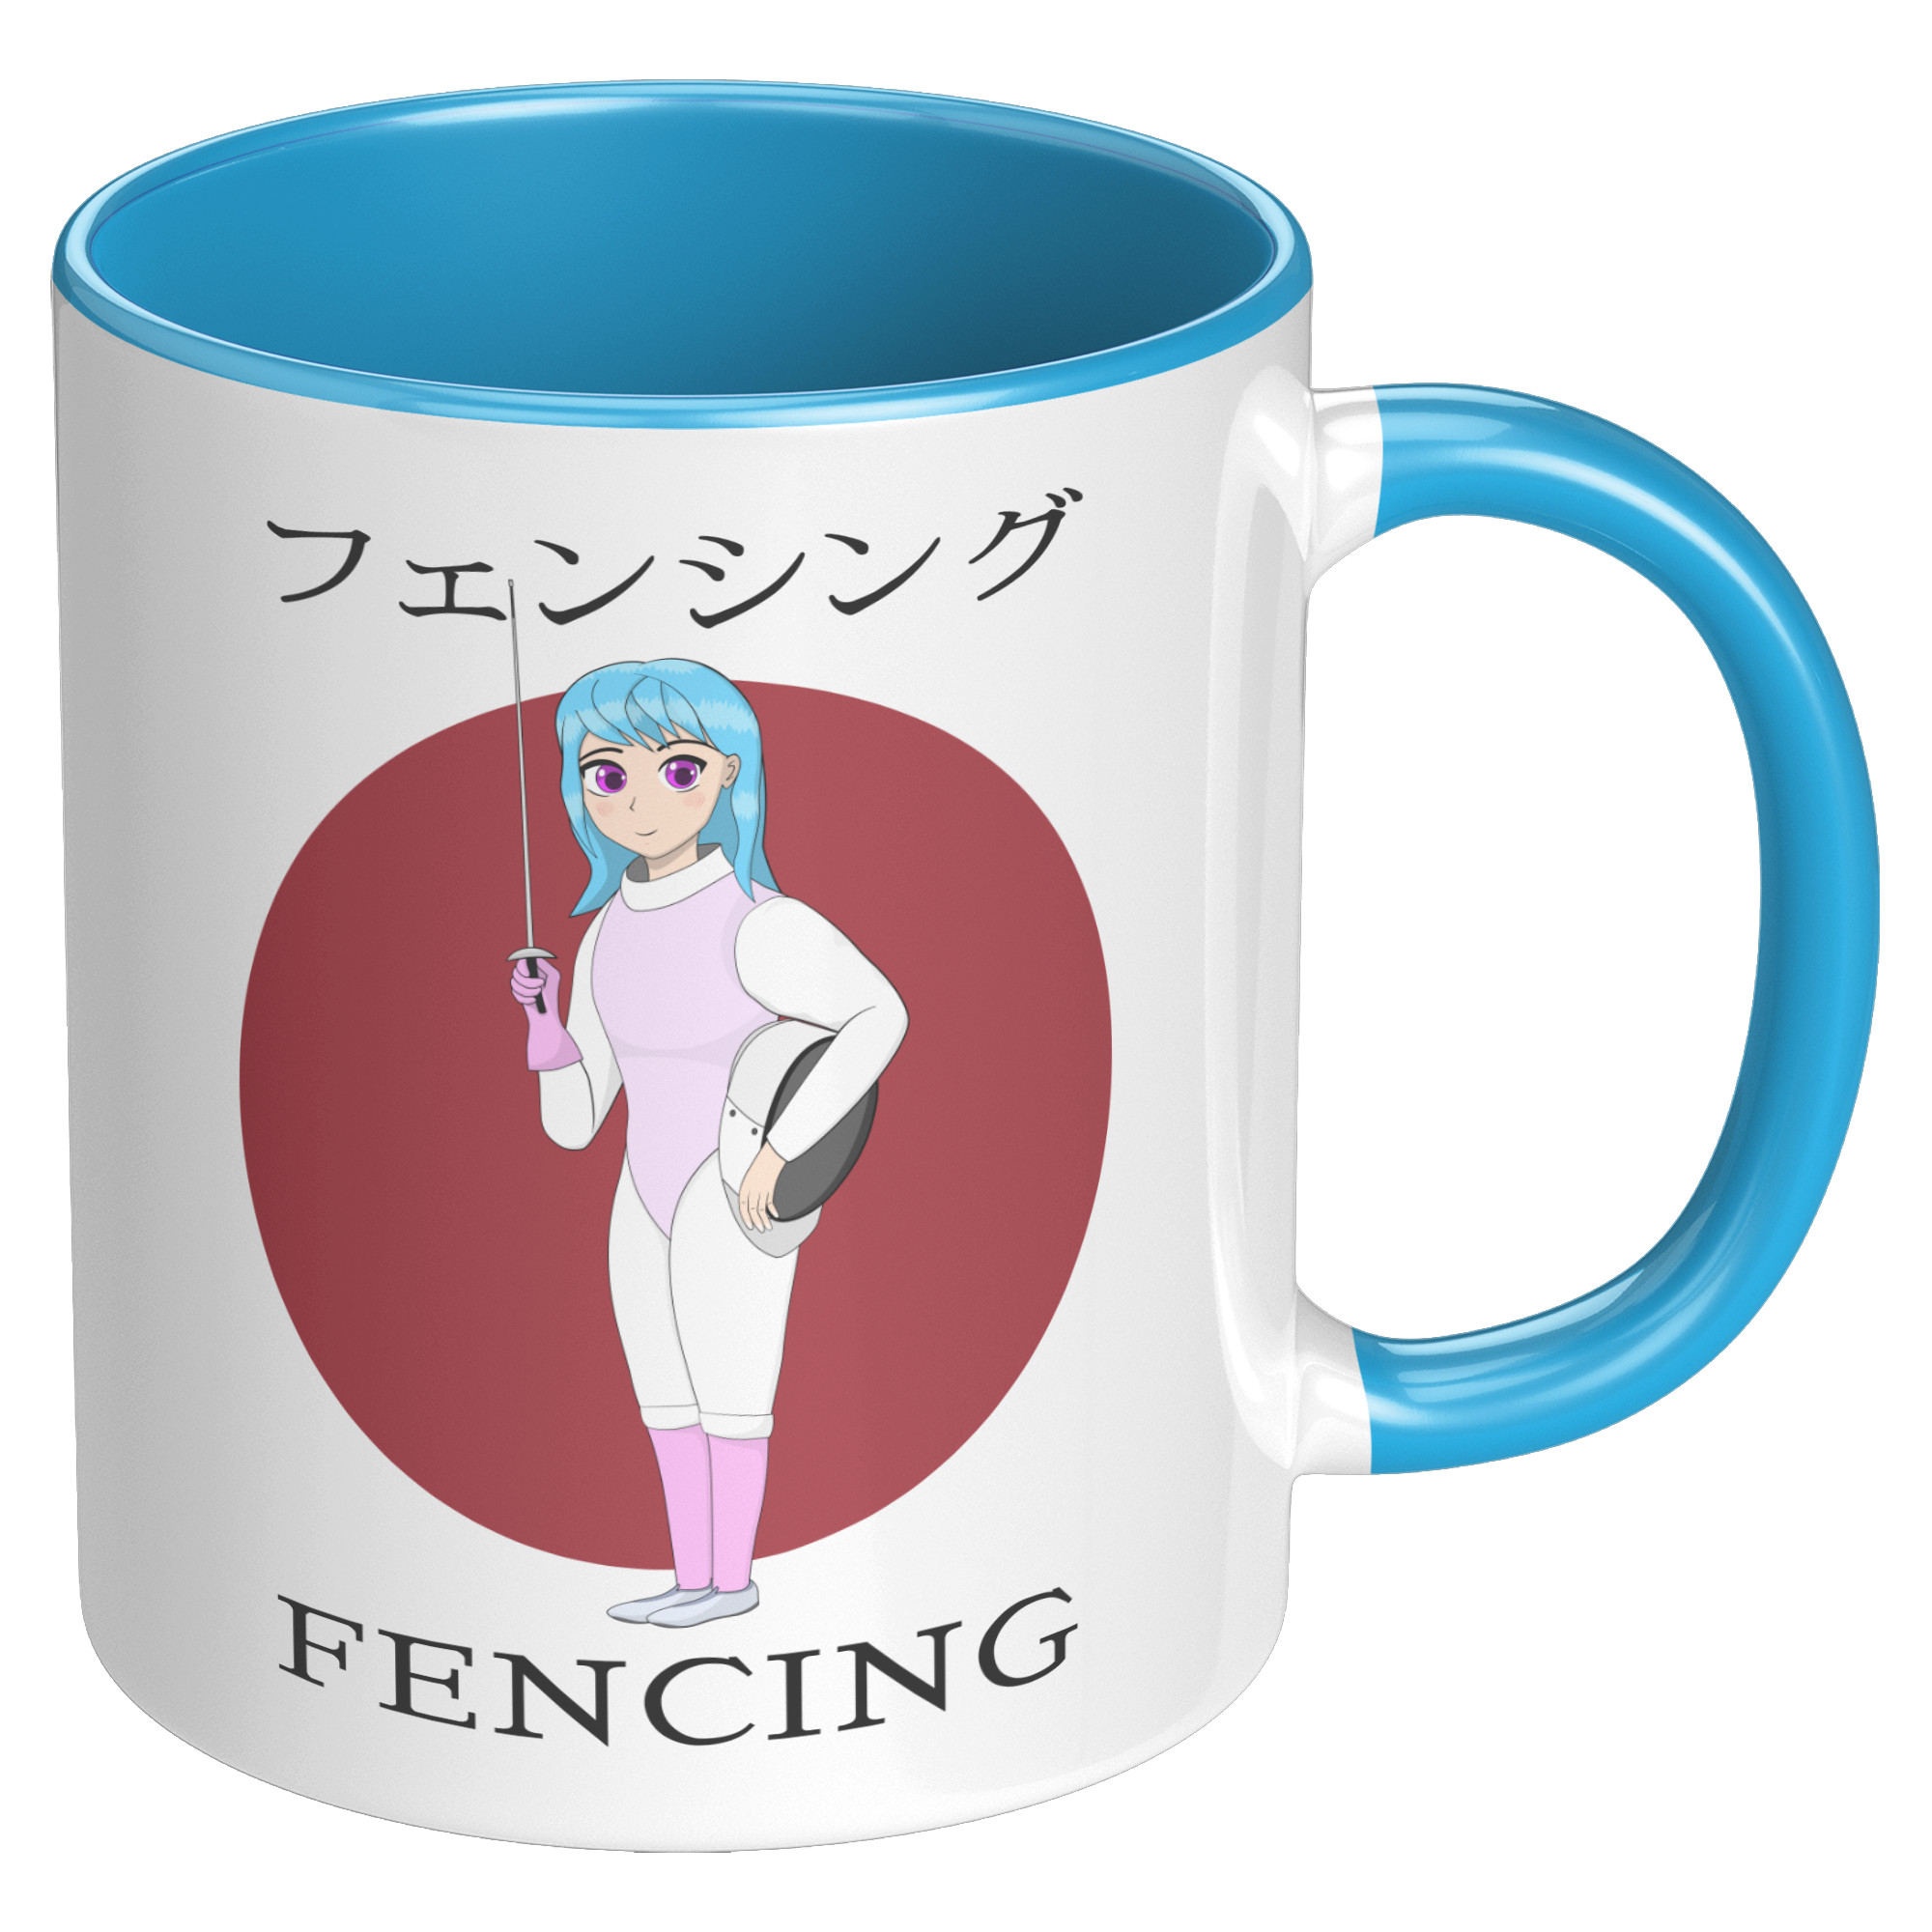 https://www.fencinglove.com/wp-content/uploads/2022/12/Foil_Fencing_Mug_-_Anime_Style_Fencer_Gi_RH_Blue_Mockup-1.jpg